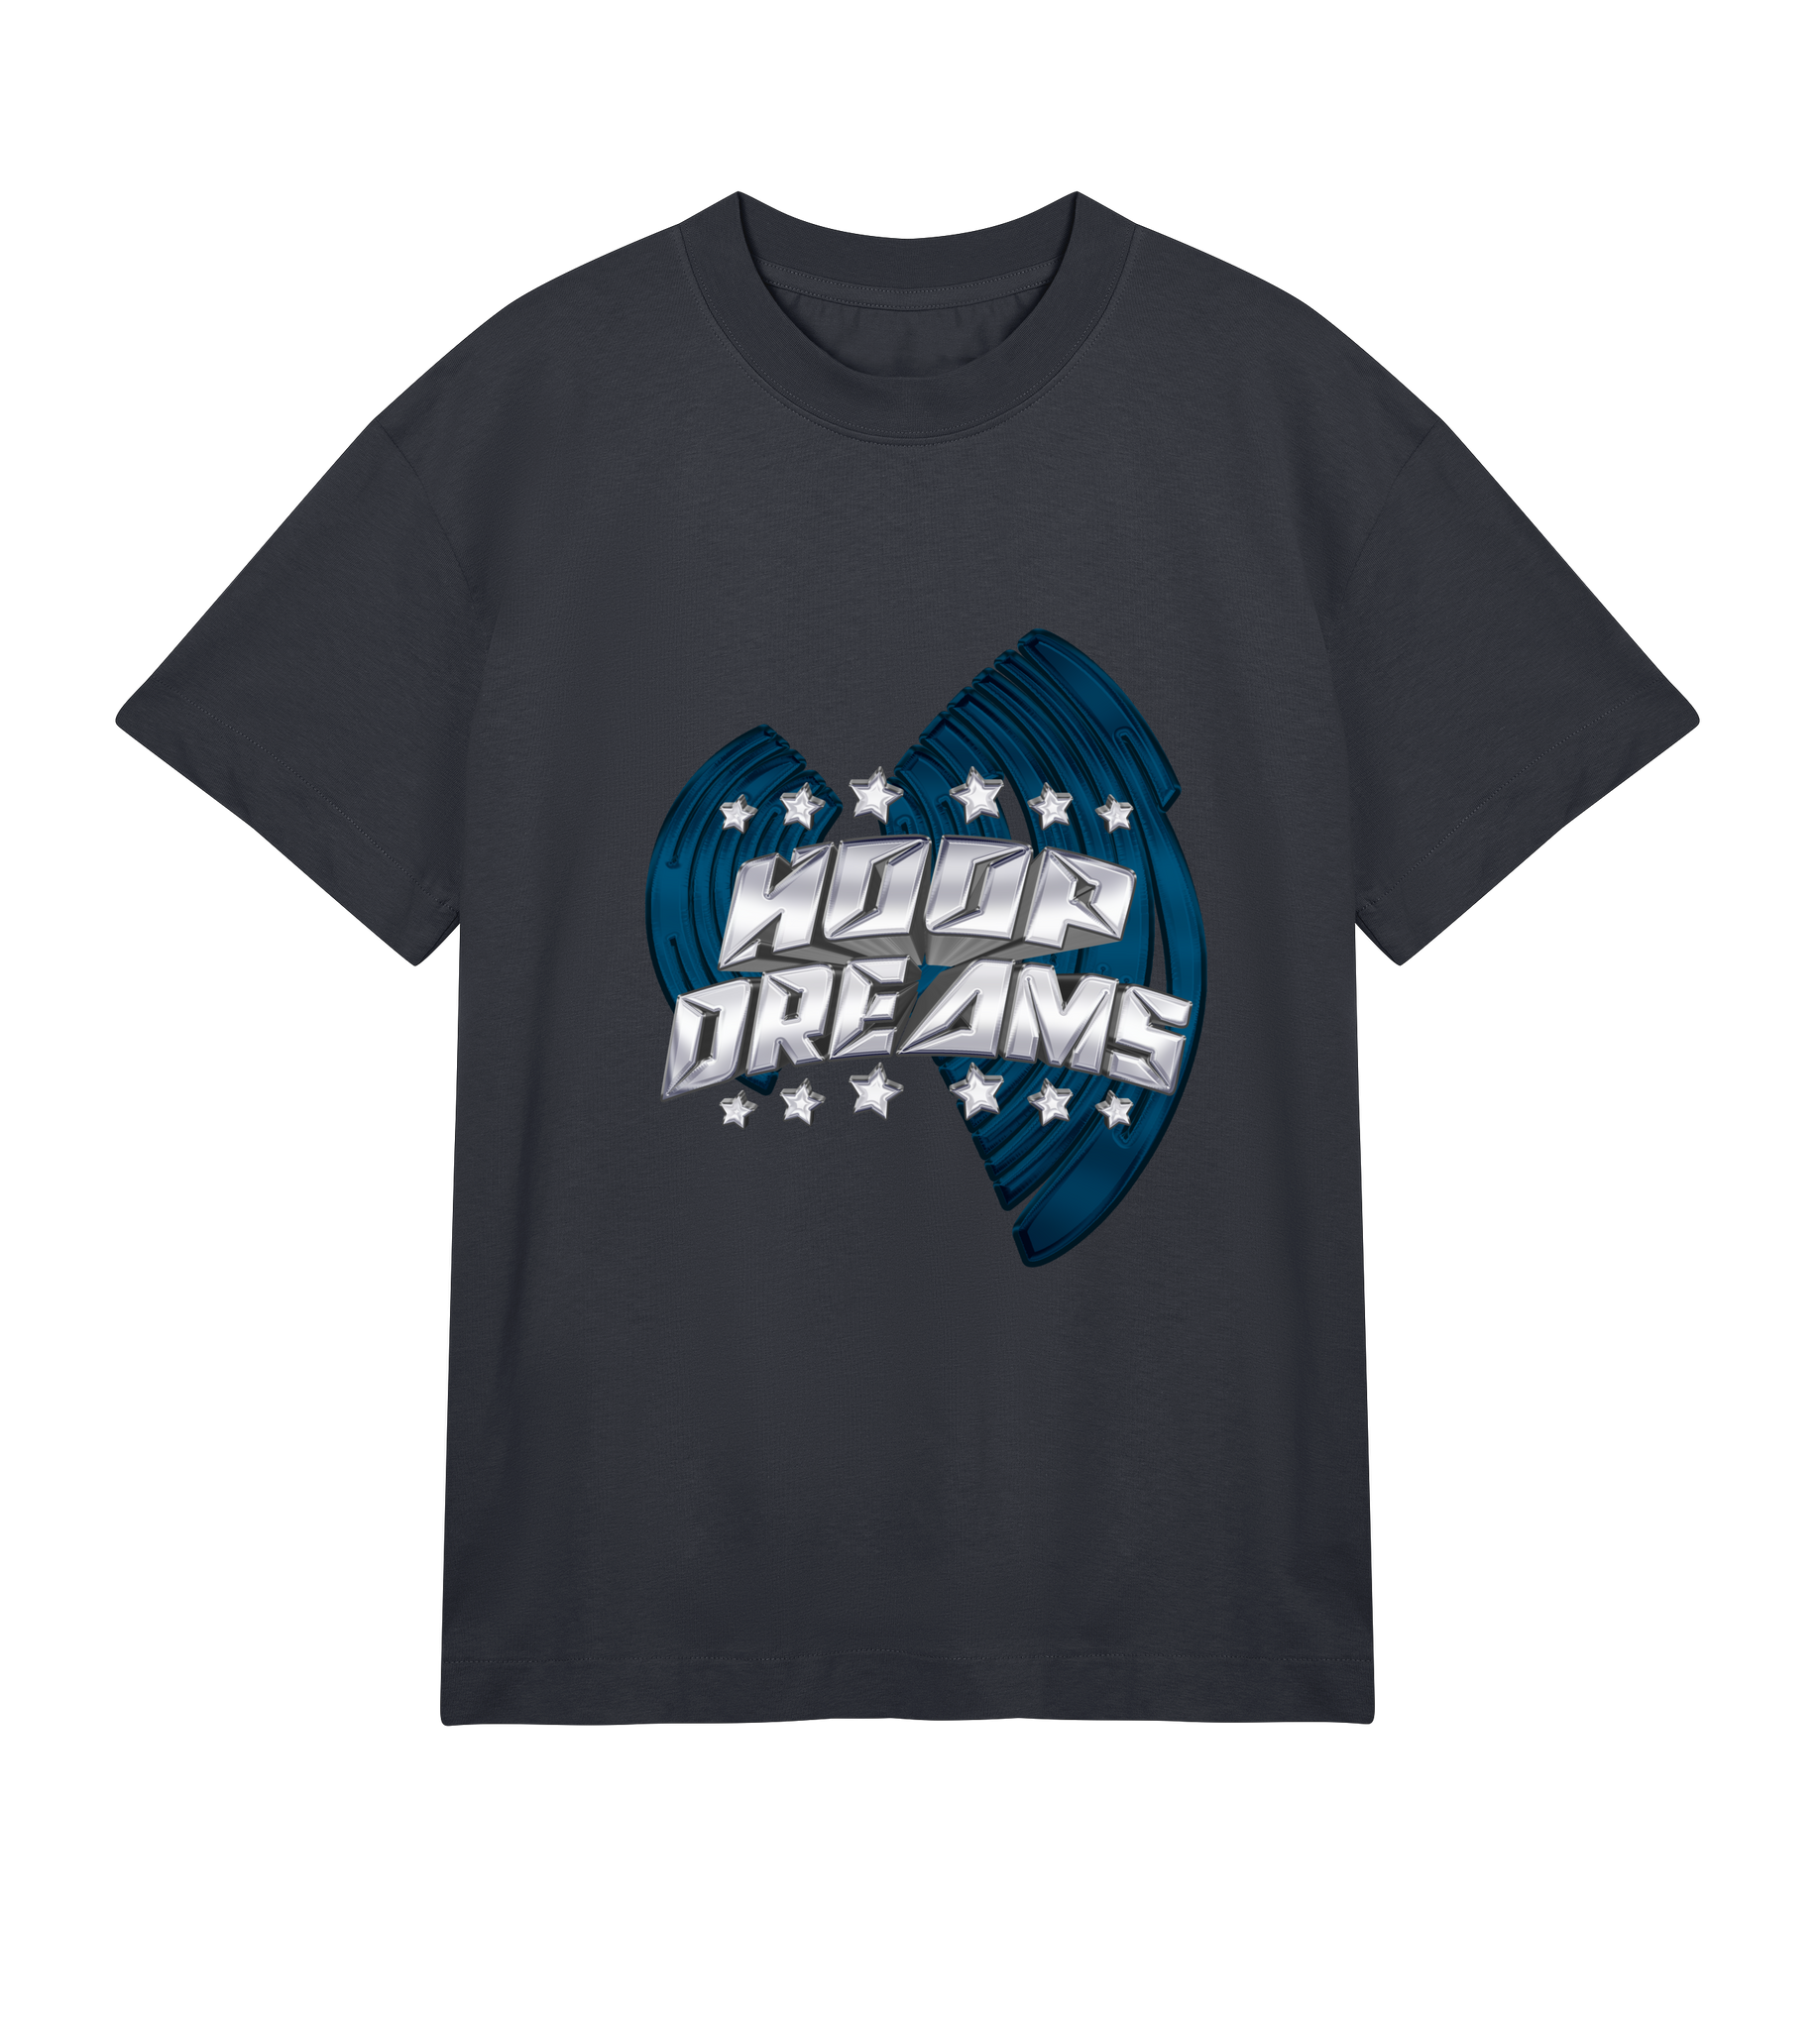 The Diplomats T-shirt